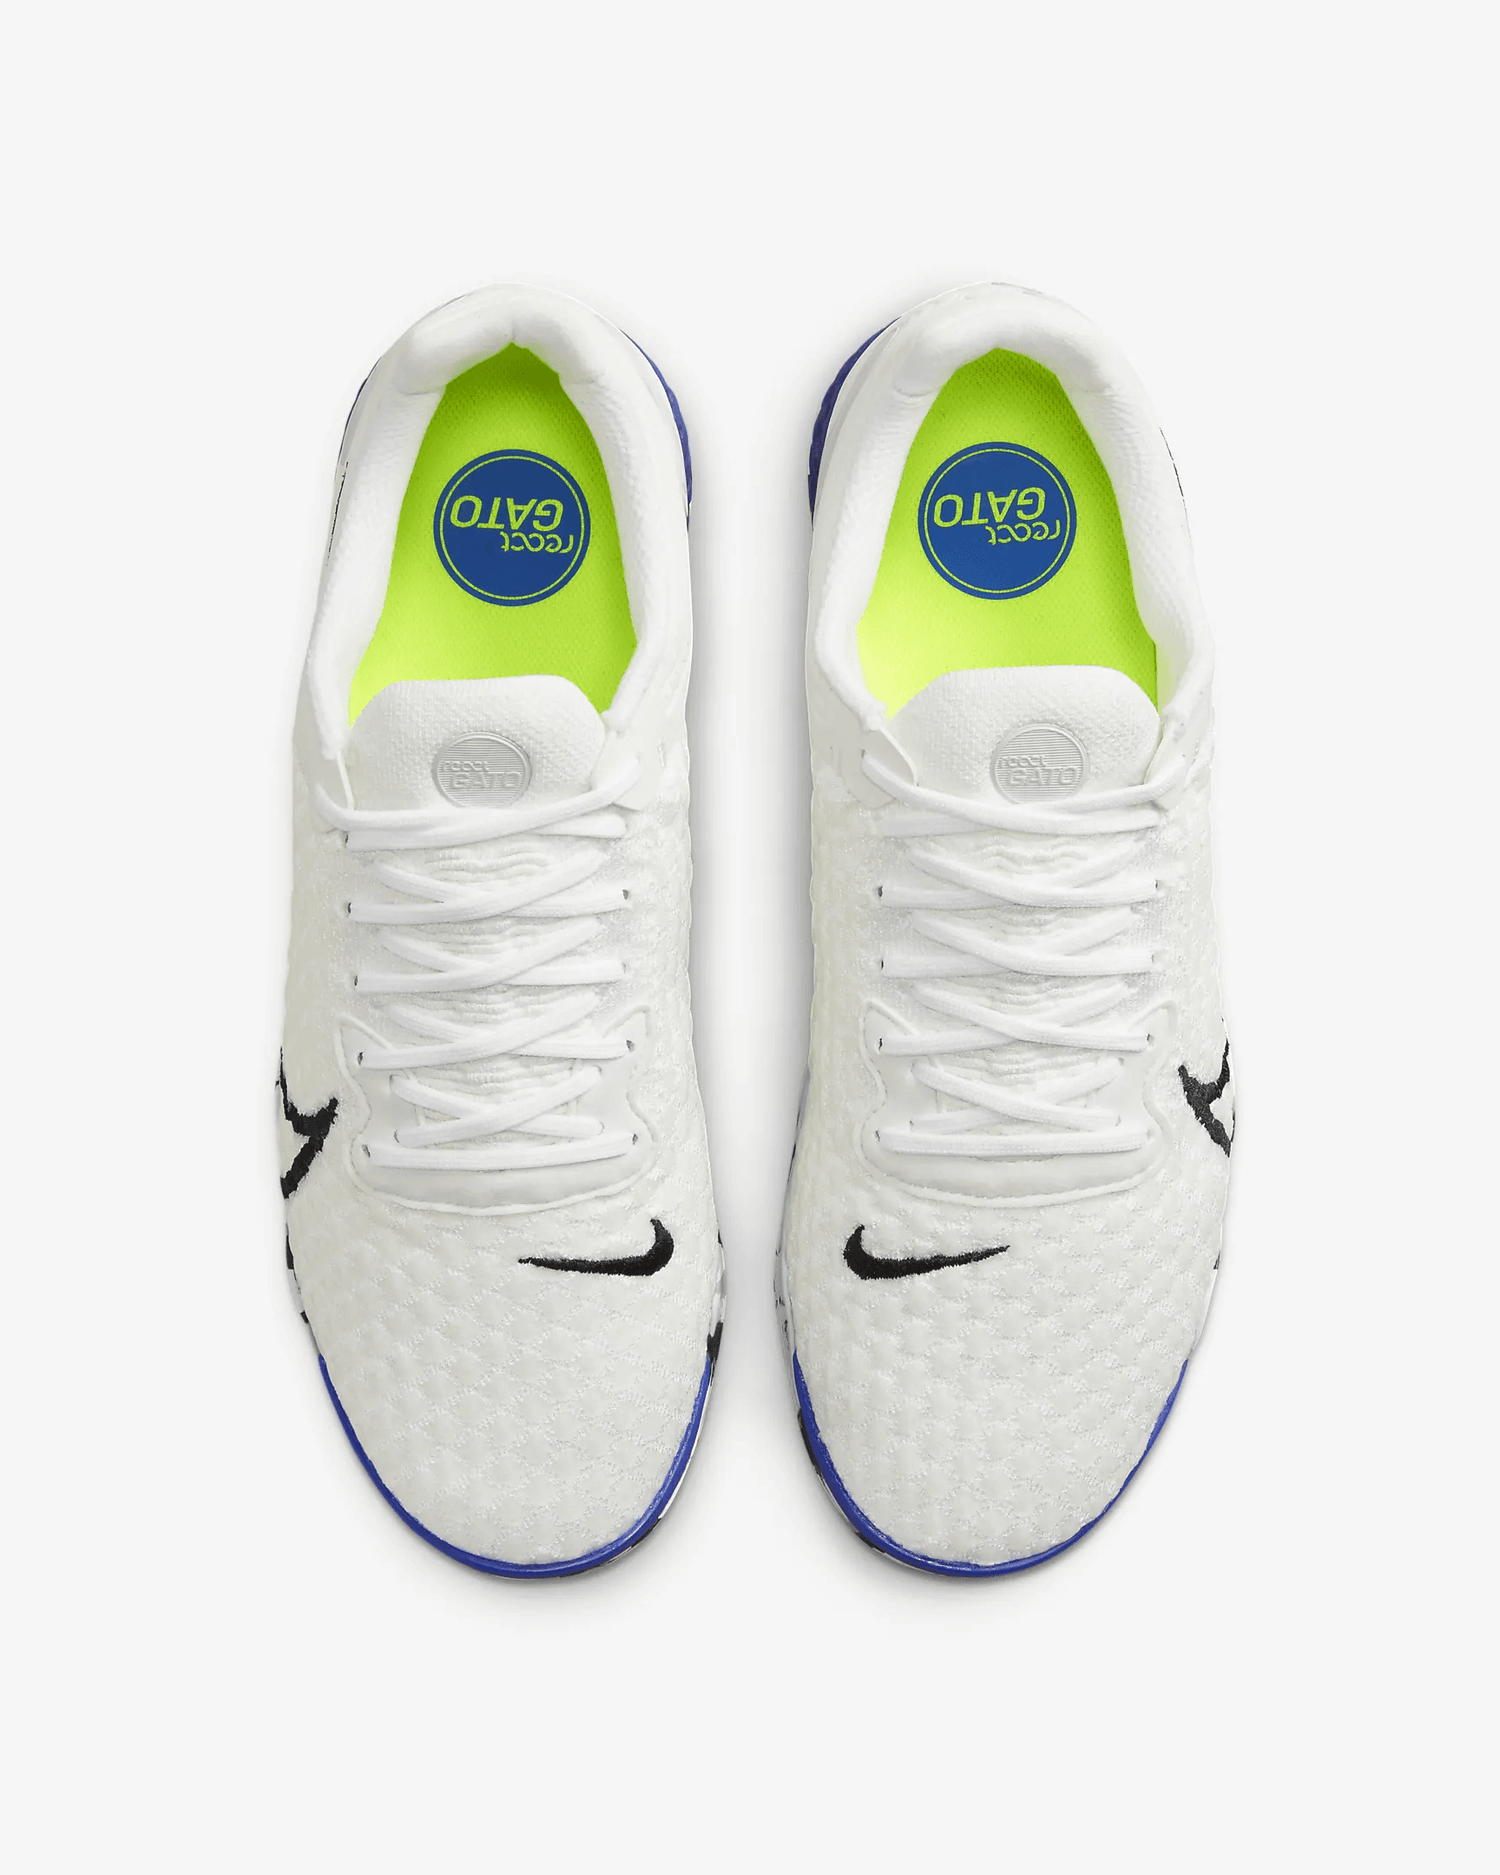 Nike Reactgato - White - Black - Blue (Pair - Top)